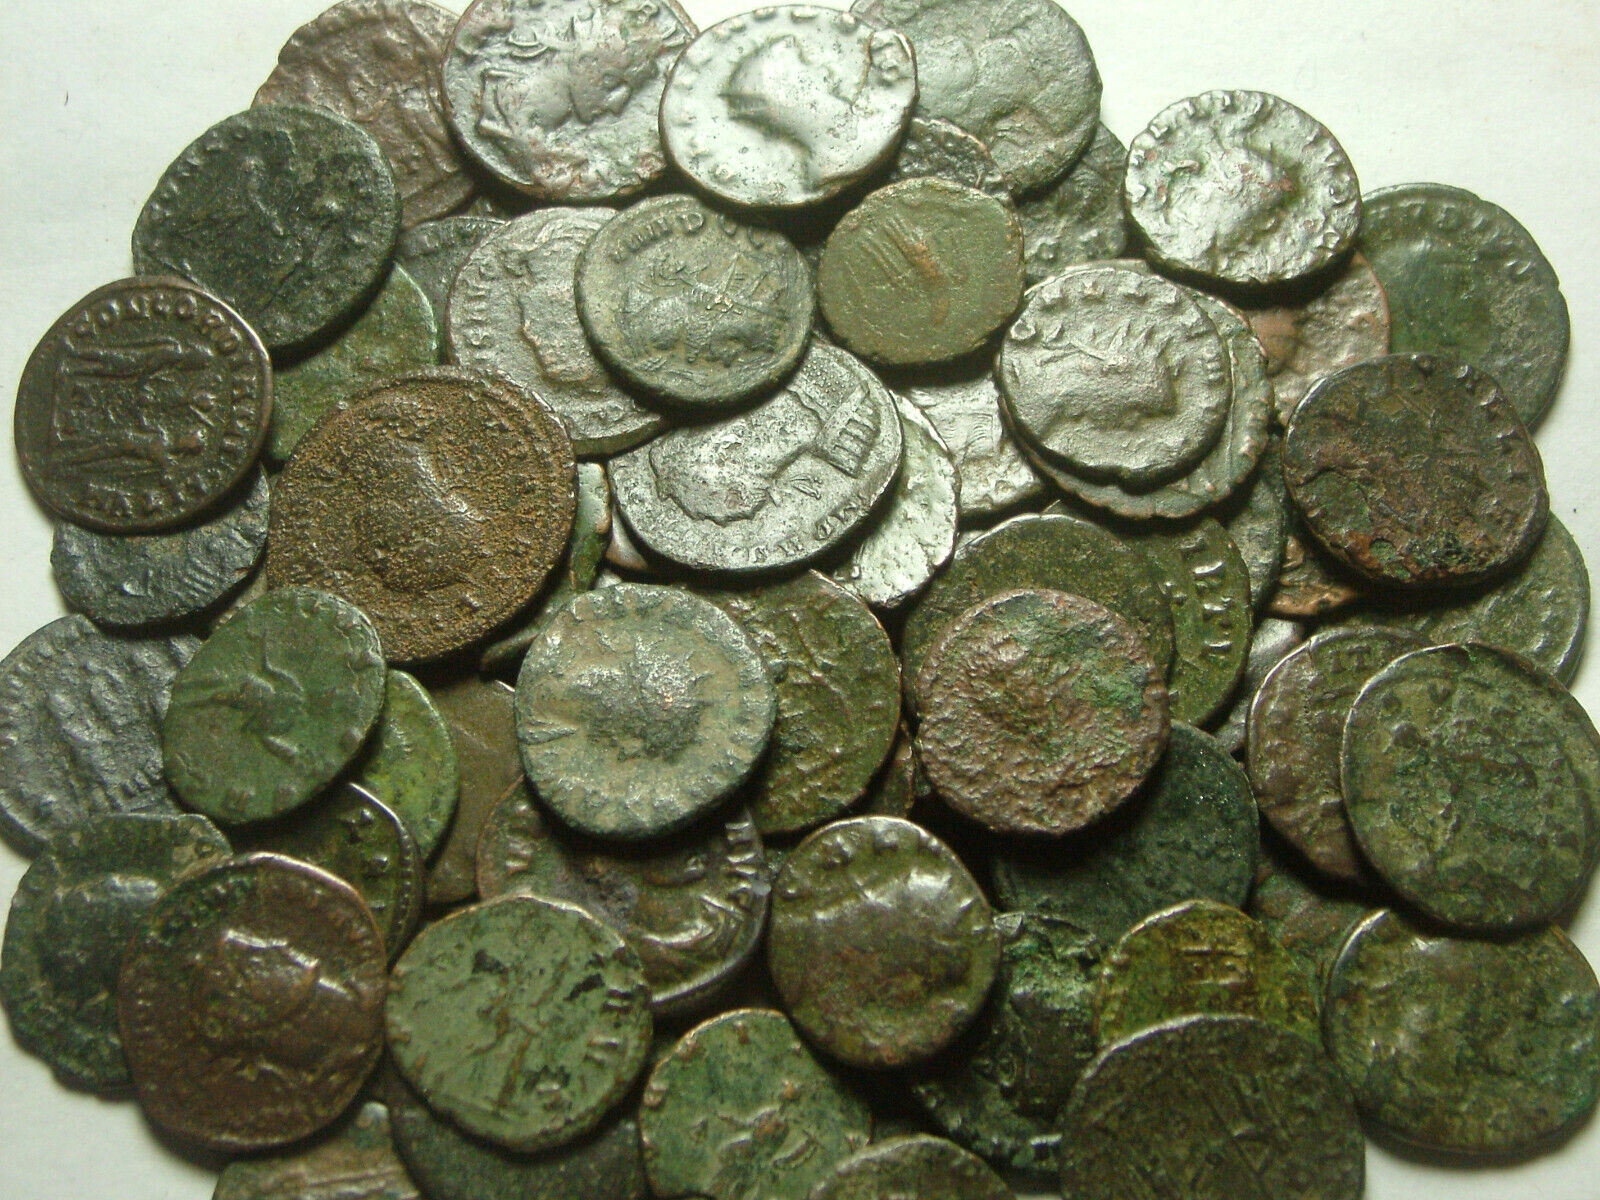 Lot of 3 Rare original Ancient Roman Antoninianus coins Probus Aurelian Claudius Без бренда - фотография #7